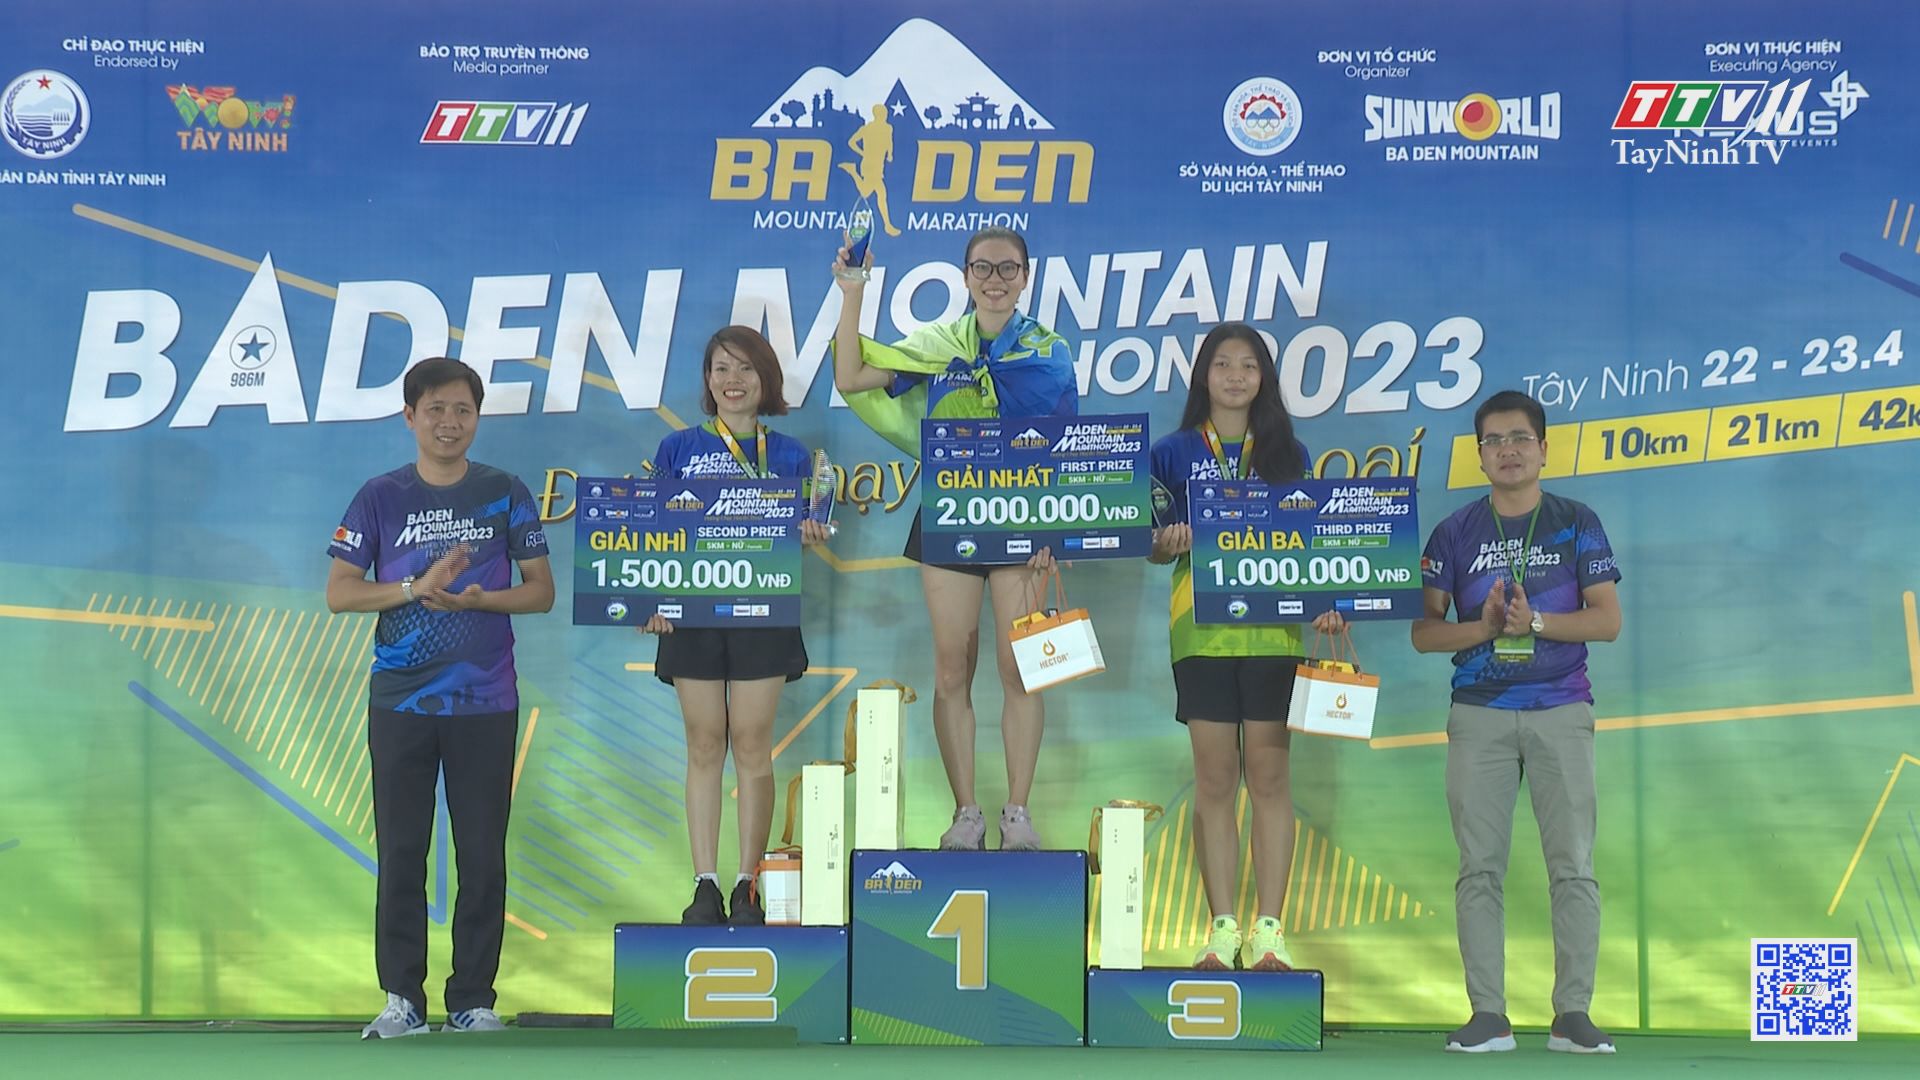 Bế mạc và trao thưởng giải BaDen Mountain Marathon 2023 | TayNinhTV